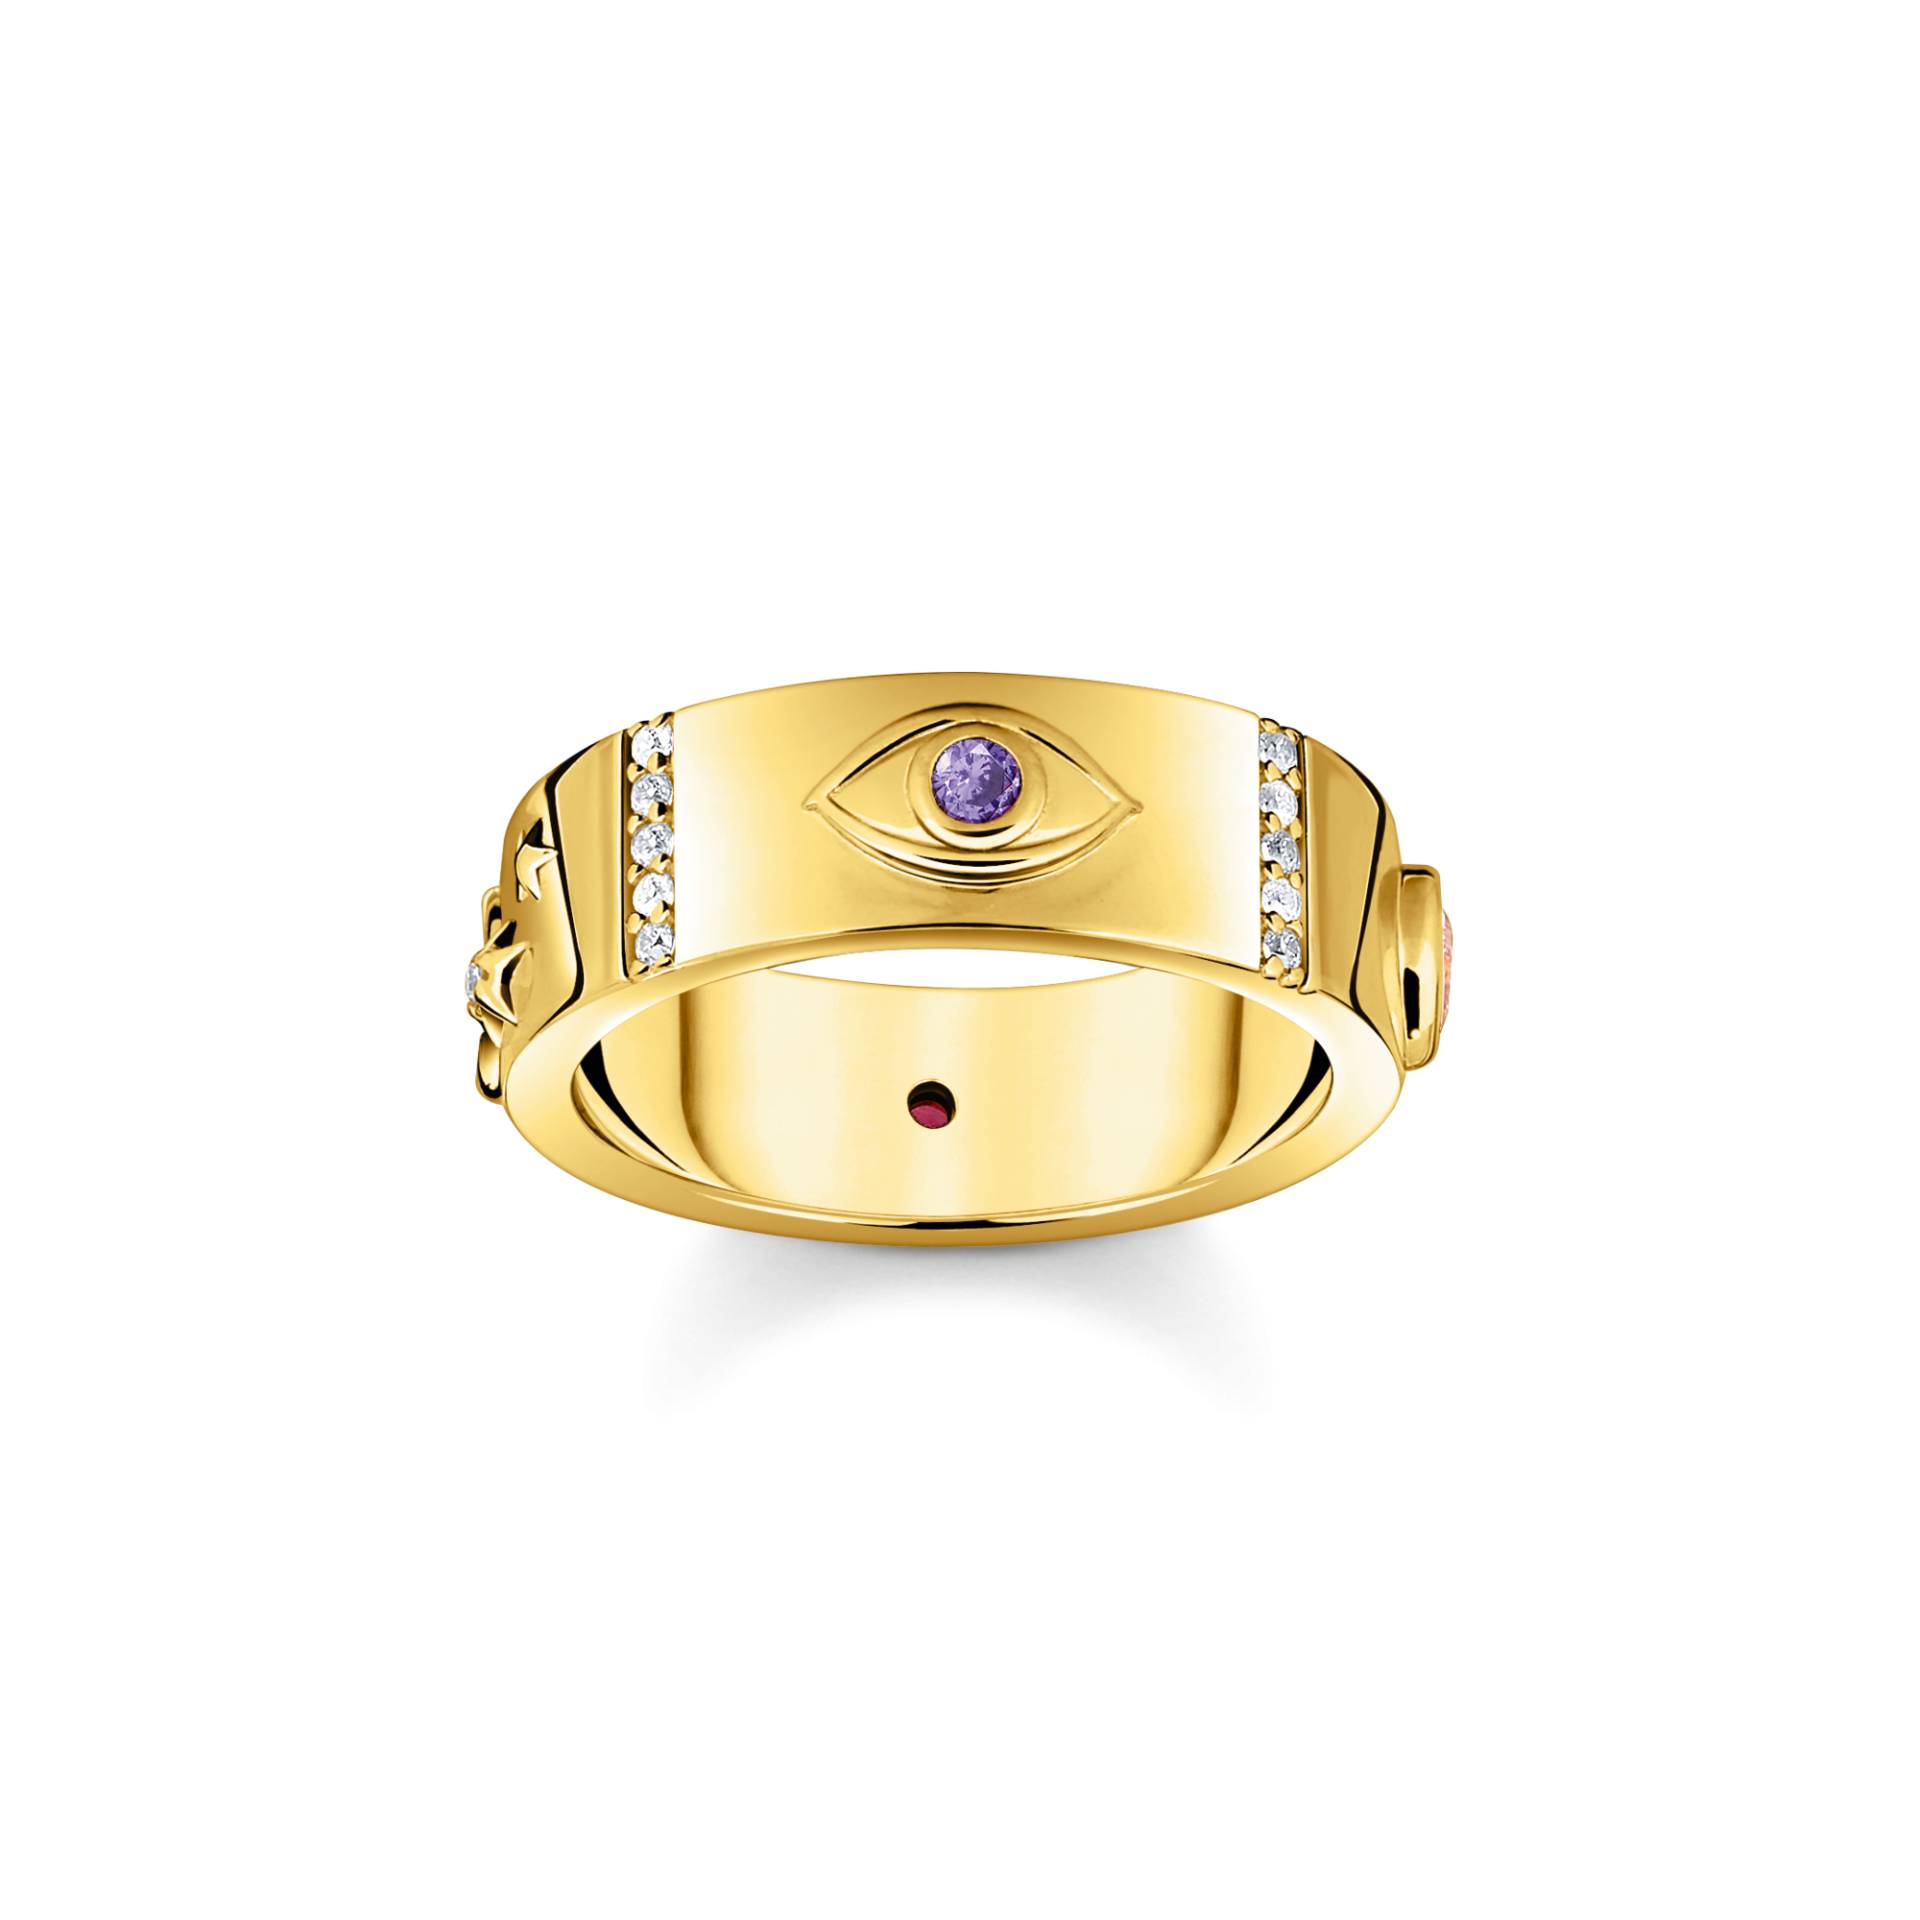 Thomas Sabo Ring mit kosmischen Symbolen und bunten Steinen vergoldet mehrfarbig TR2439-995-7-58 von Thomas Sabo